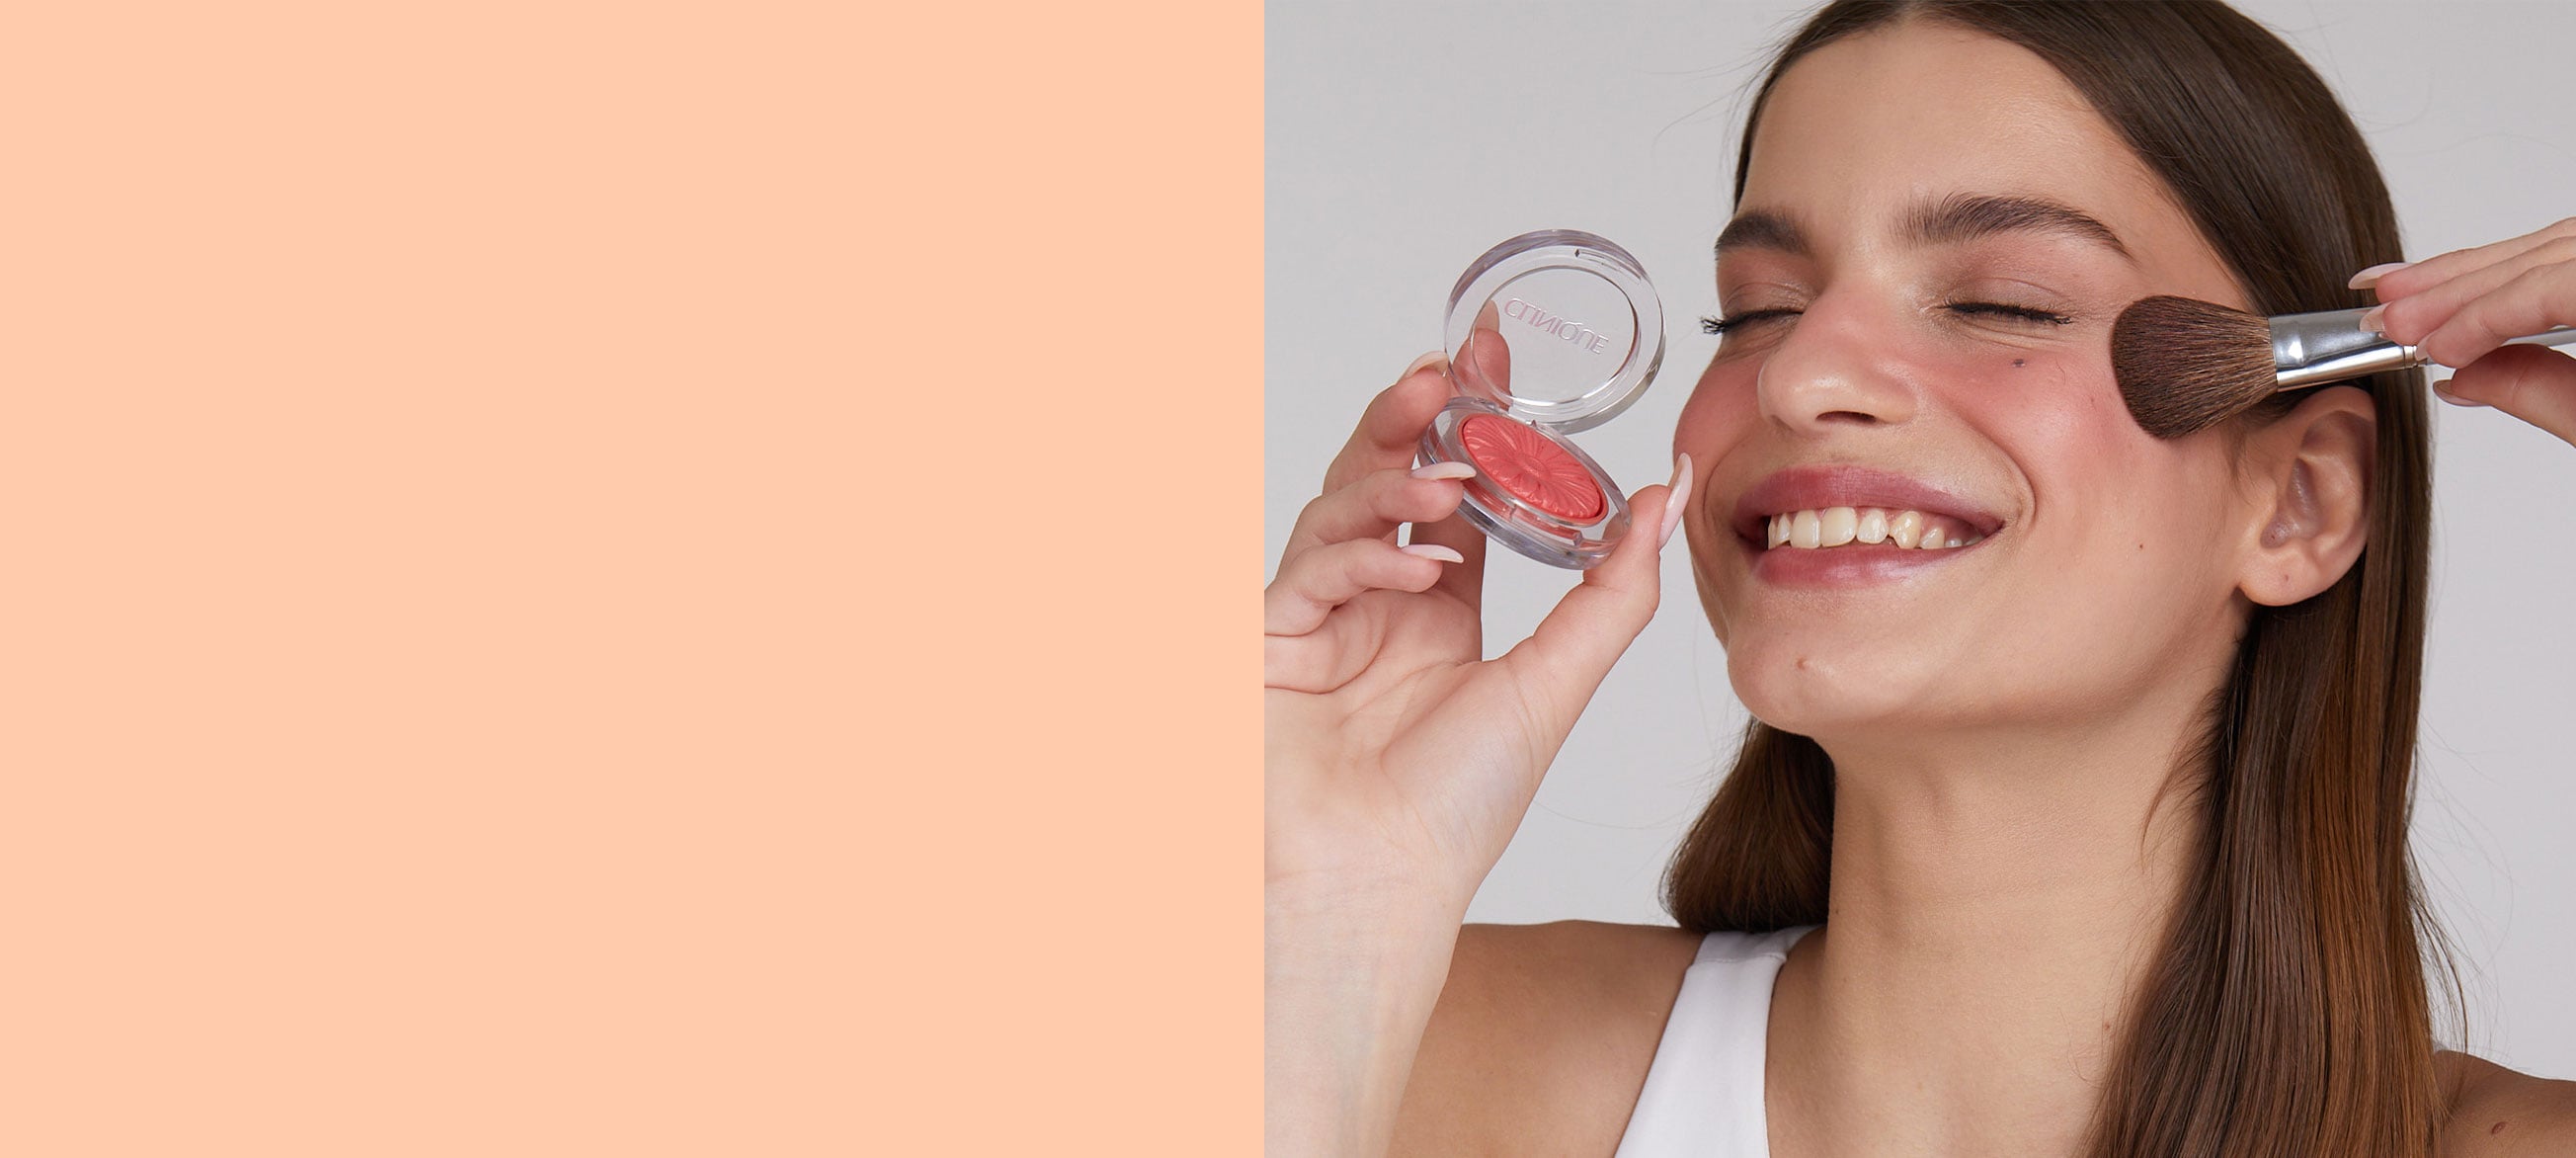 Ontdek peach make-up trend en geniet van een unieke korting op 3 clinique essentials